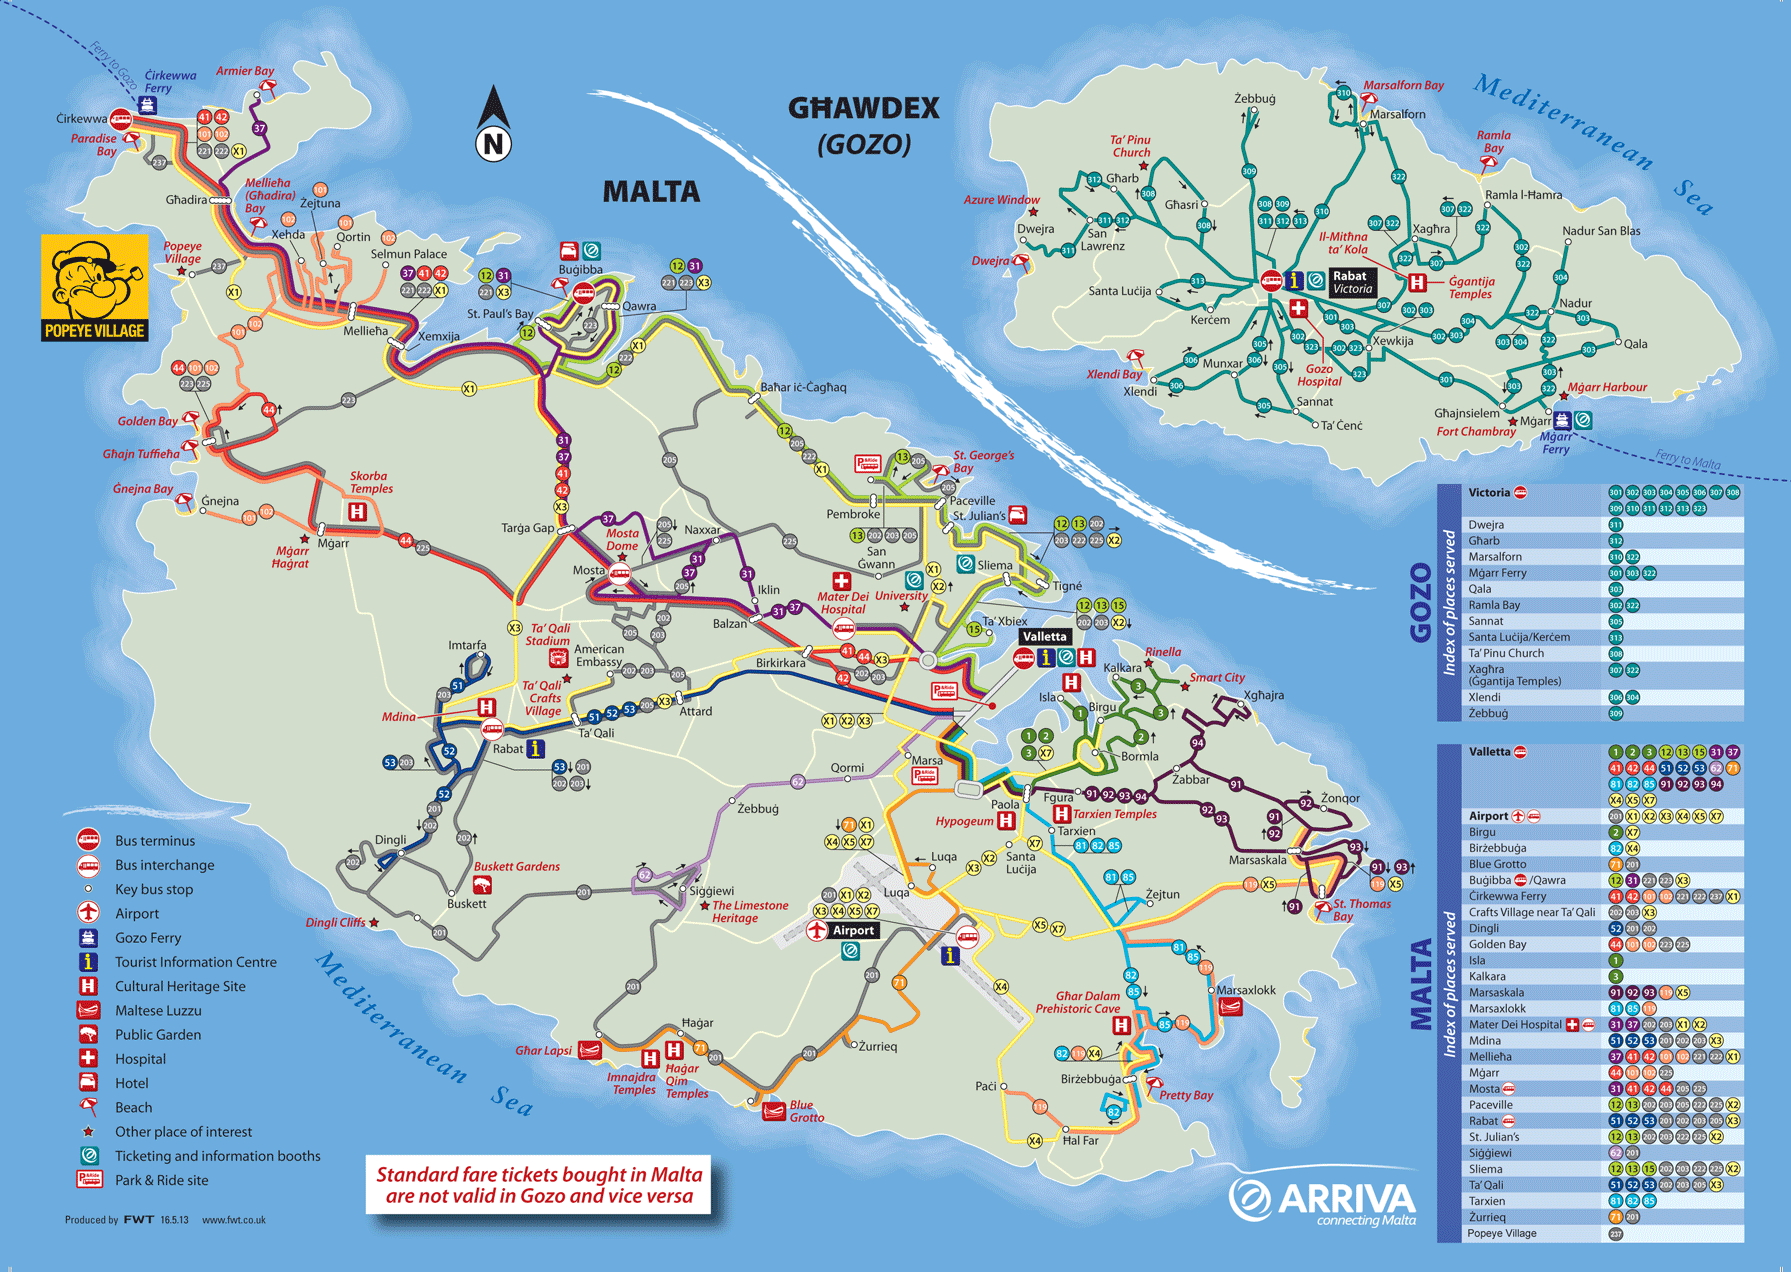 Plano de autobuses de Malta